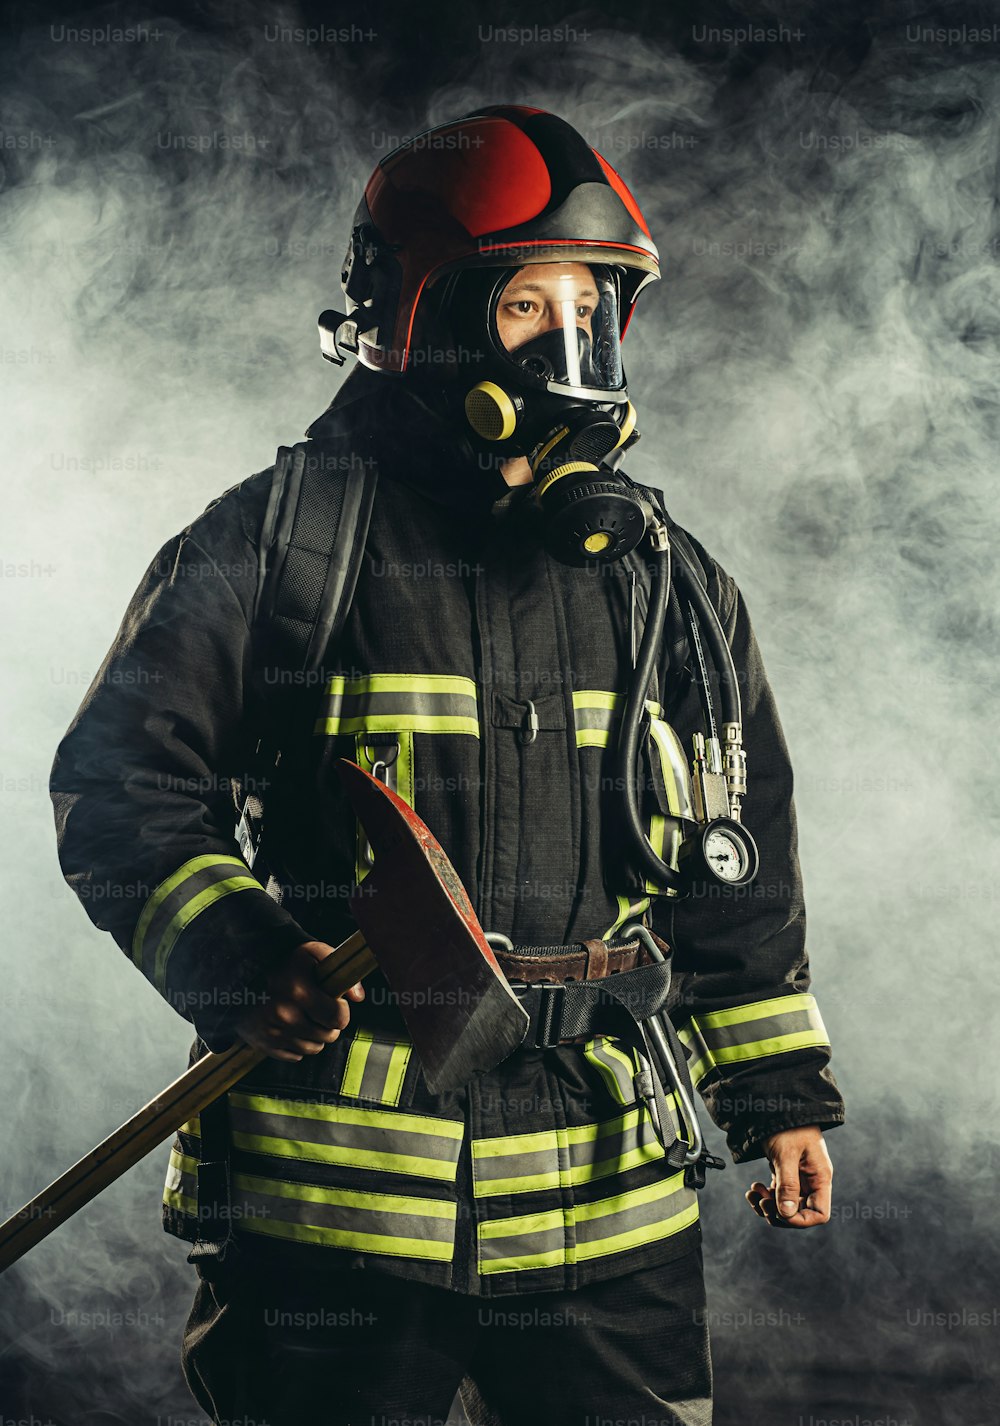 강한 중년 소방관은 특별한 마스크나 헬멧, 보호복을 입고 사람들을 화재로부터 보호하려고 합니다